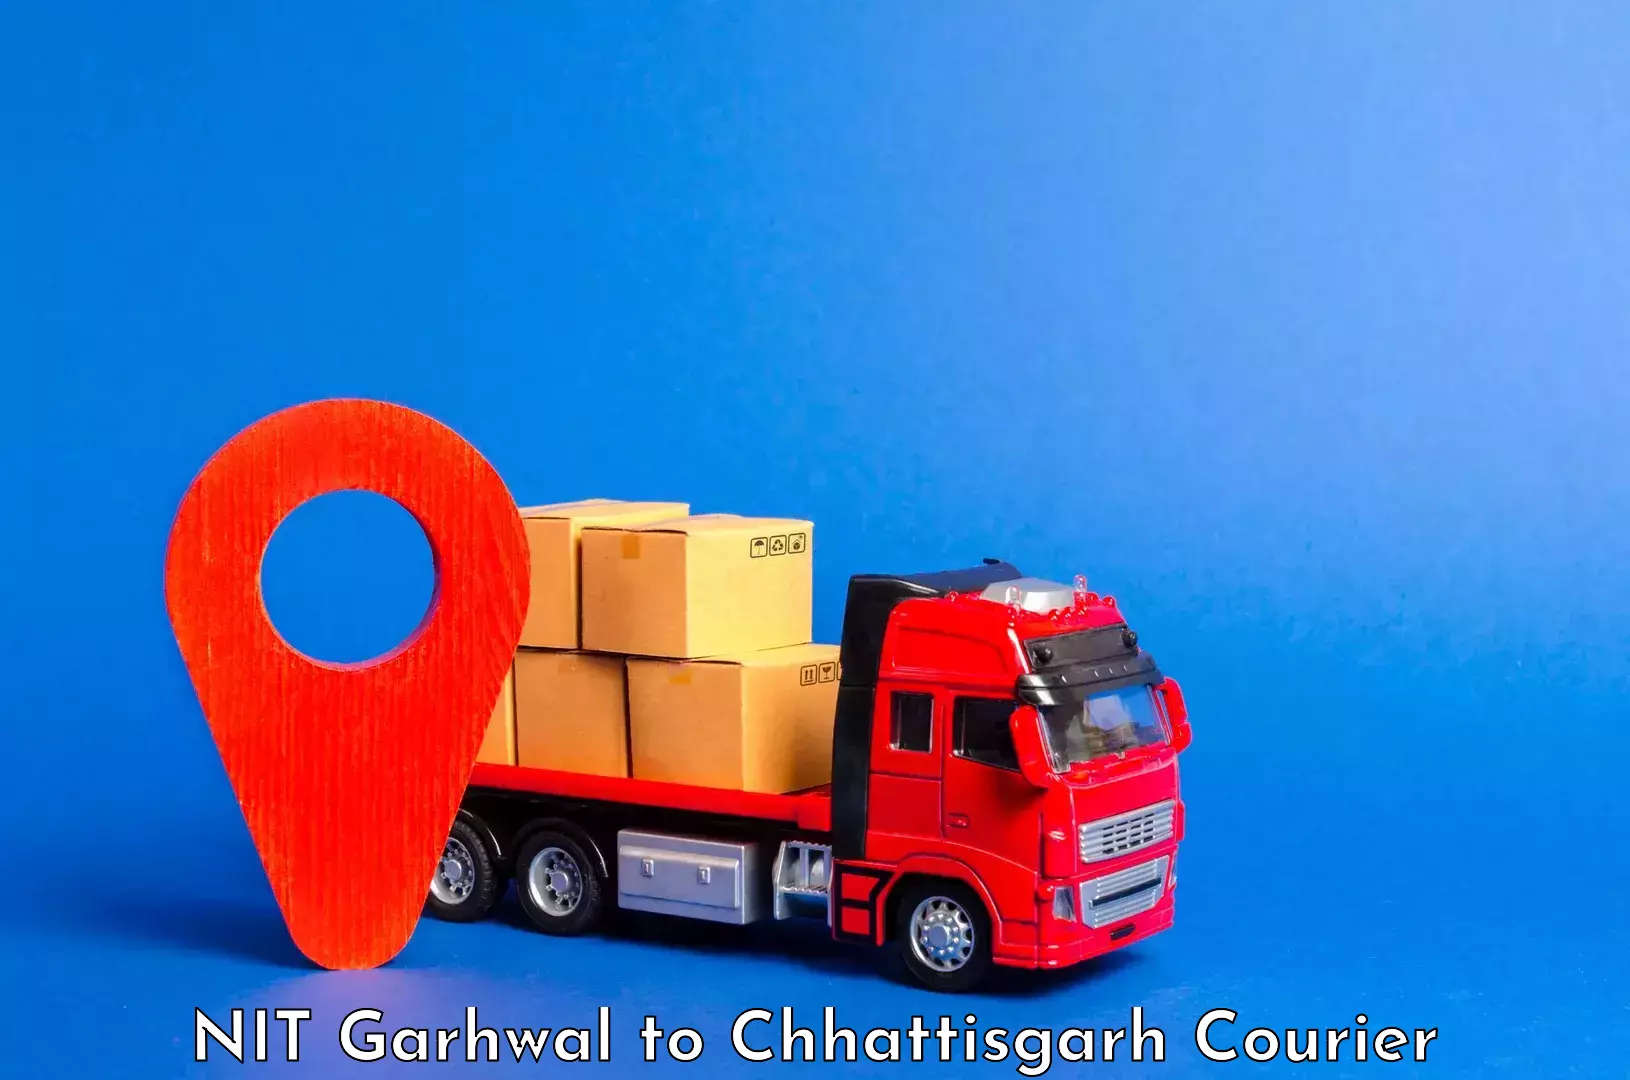 Luggage transport service NIT Garhwal to Chirimiri